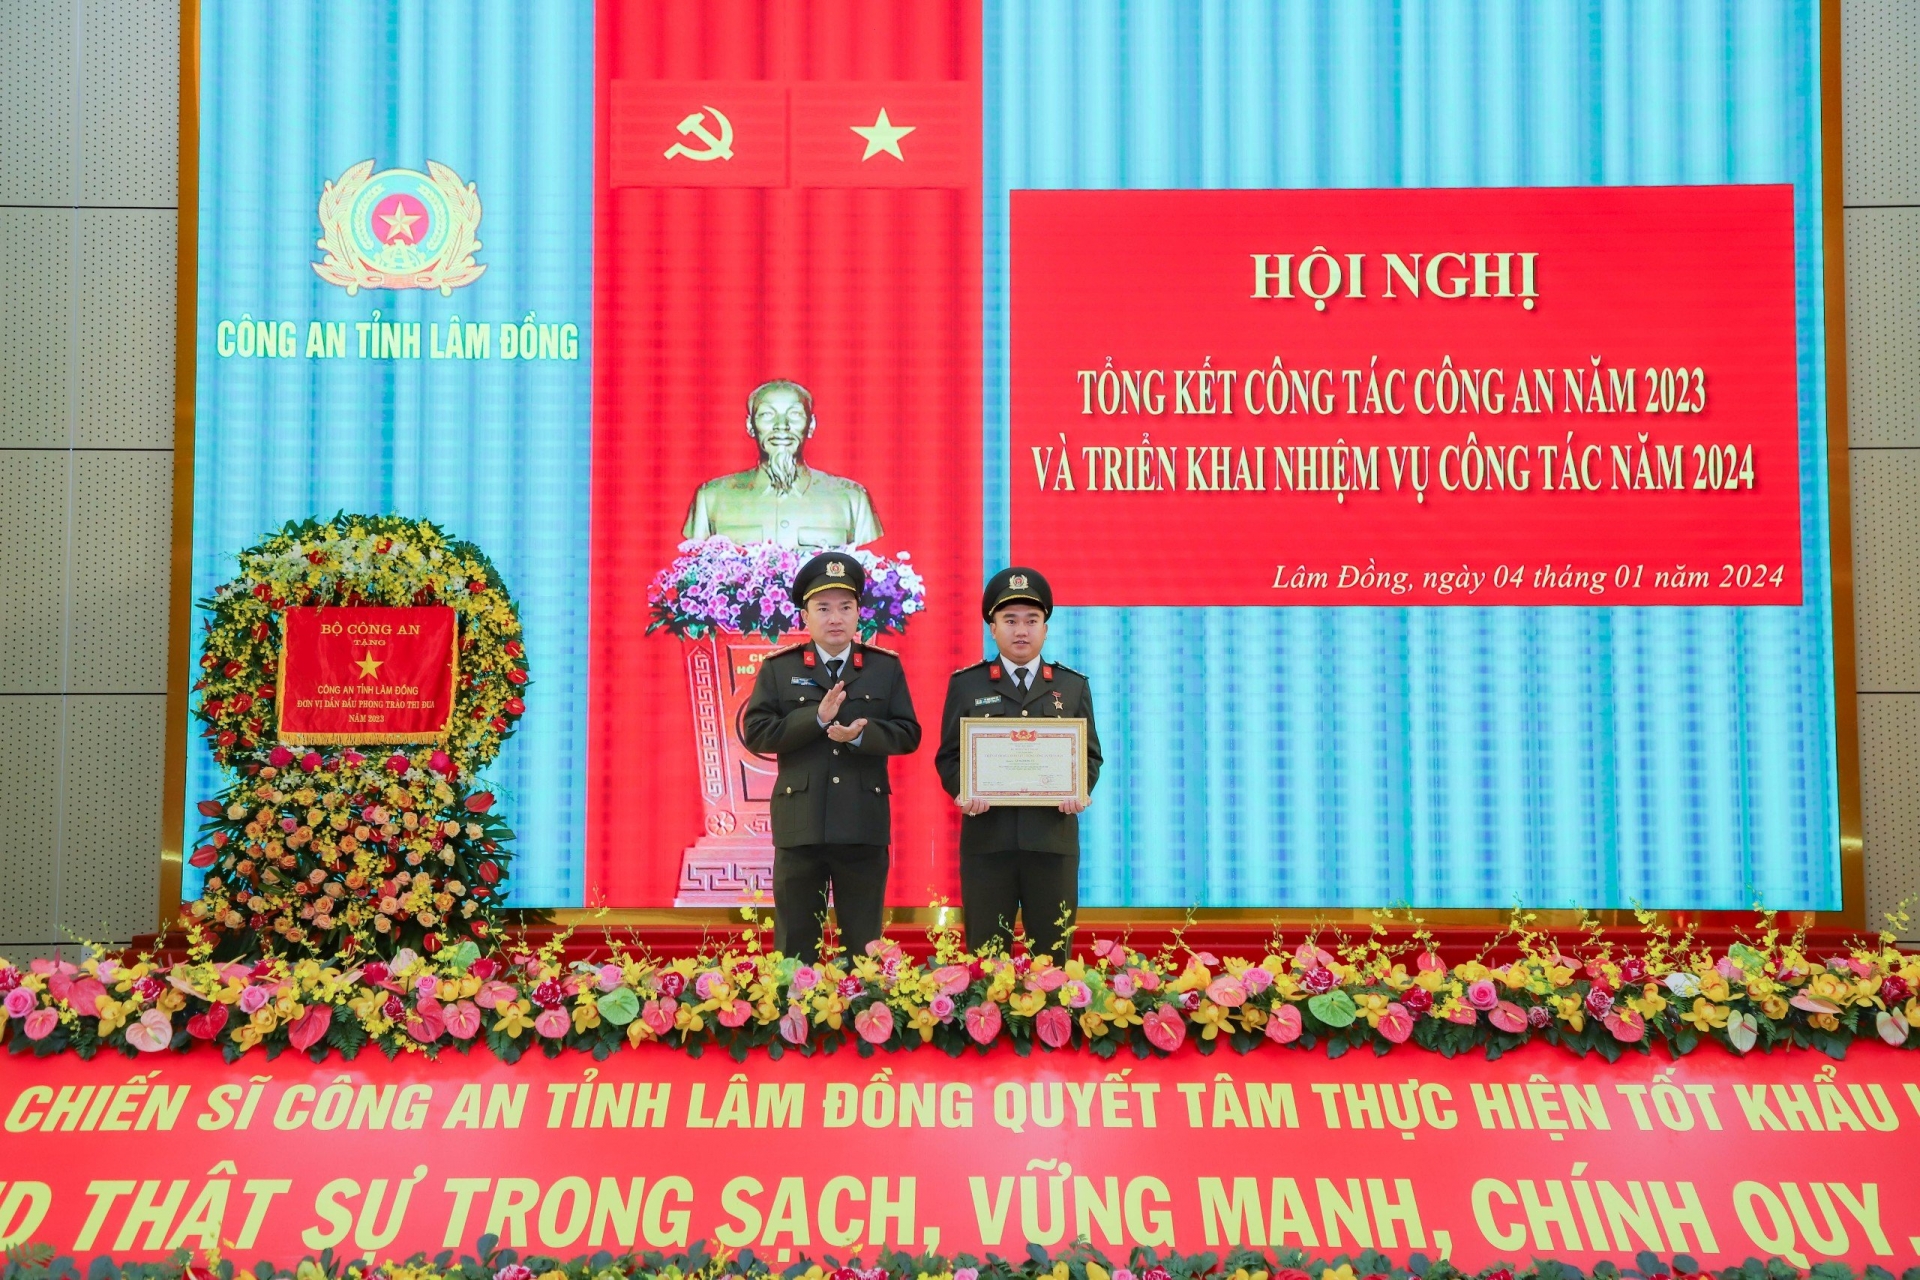 Đại tá Trương Minh Đương trao Quyết định và Bằng chứng nhận Chiến sỹ thi đua toàn lực lượng Công an nhân dân của Bộ trưởng Bộ Công an cho Đại úy Lê Ngô Hồng Vũ - Trưởng Ban Thanh niên Công an tỉnh